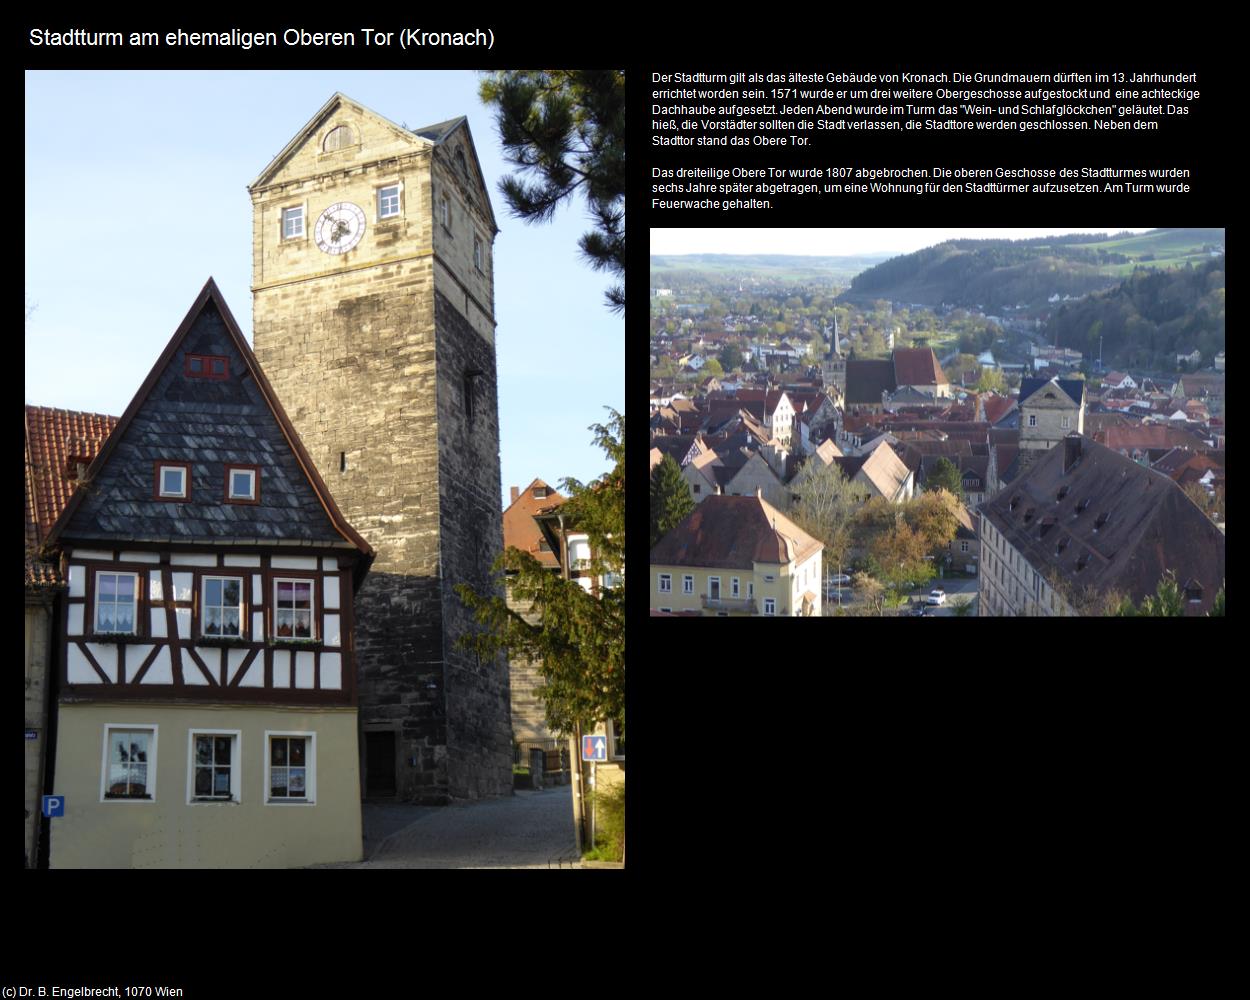 Stadtturm am ehem. Oberen Tor (Kronach) in Kulturatlas-BAYERN